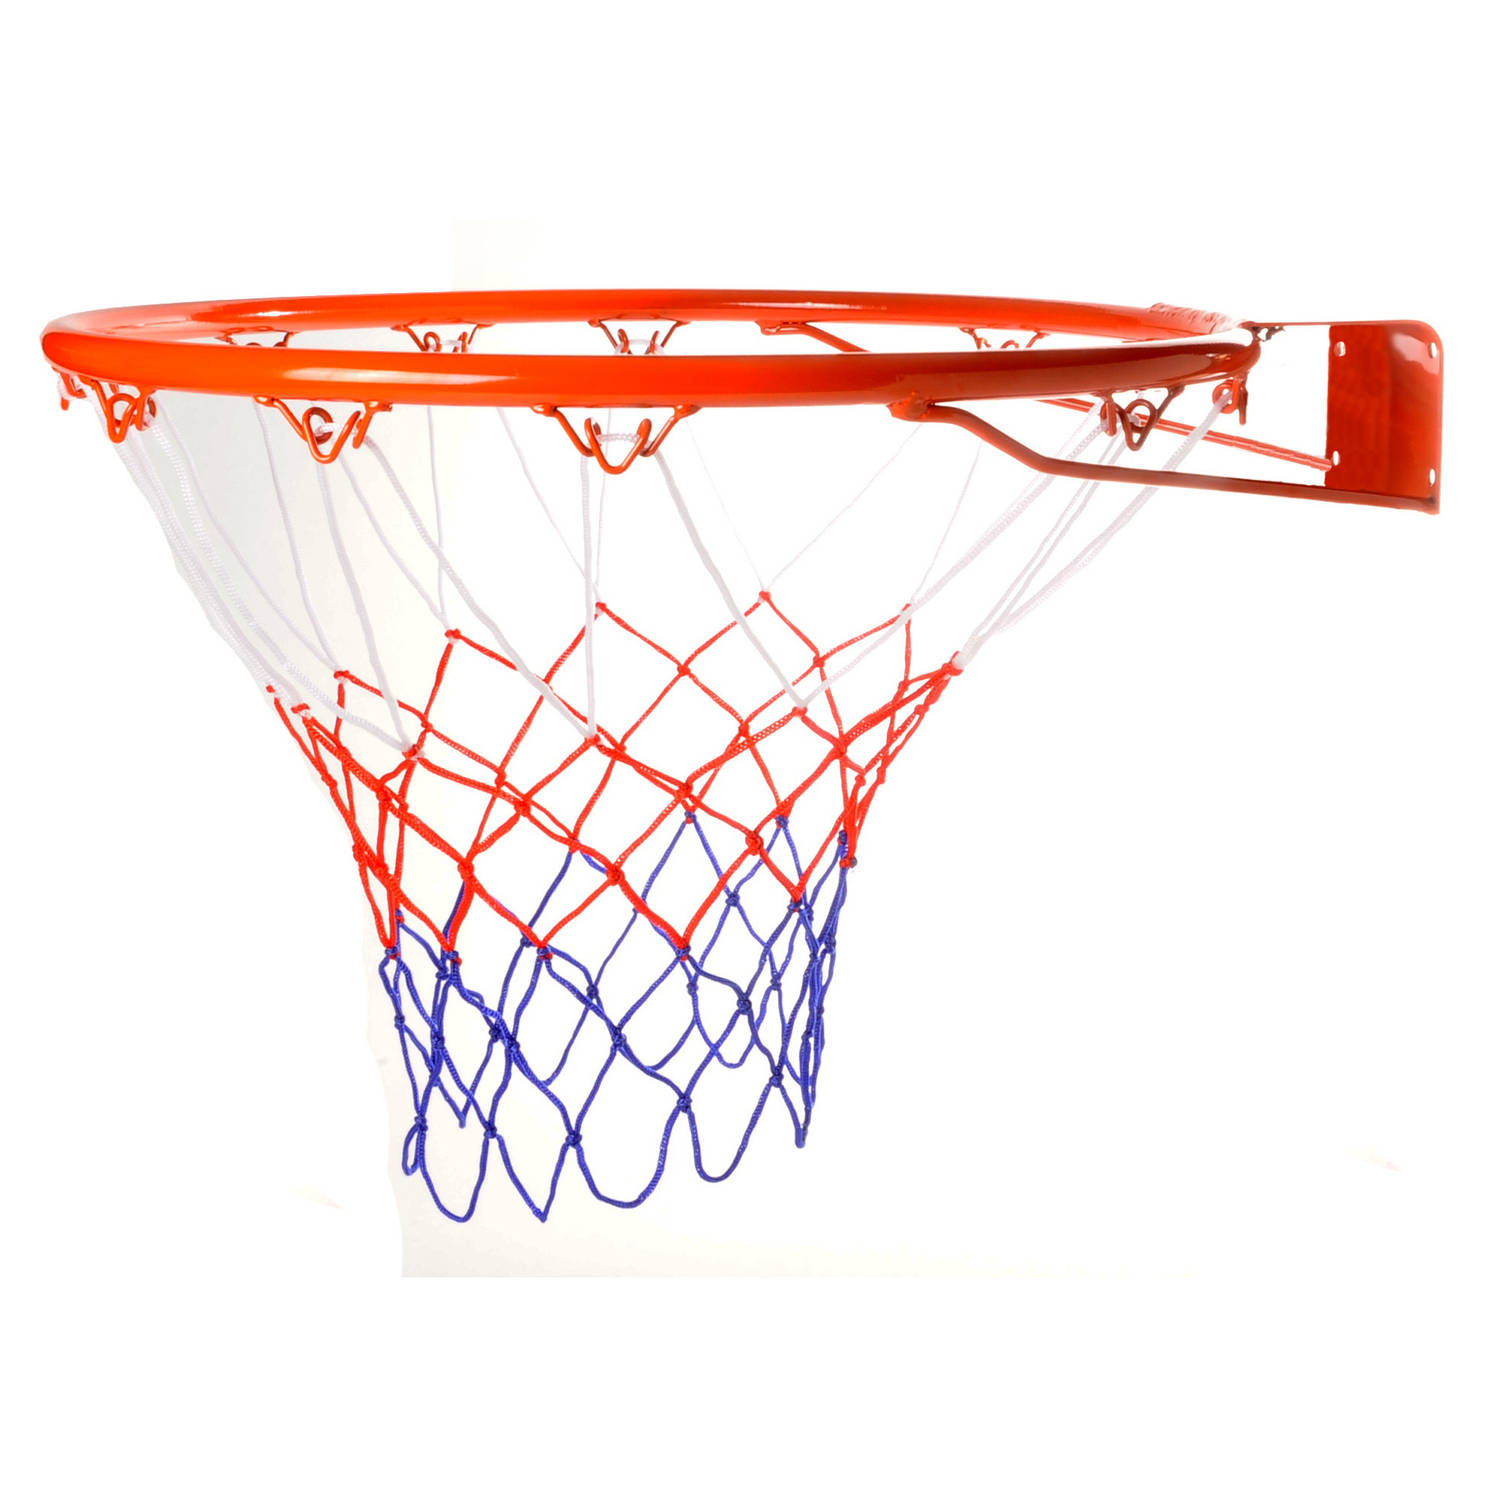 Basketbalring Inclusief Bevestigingsmateriaal Diameter 46 Cm Basketbal Ring